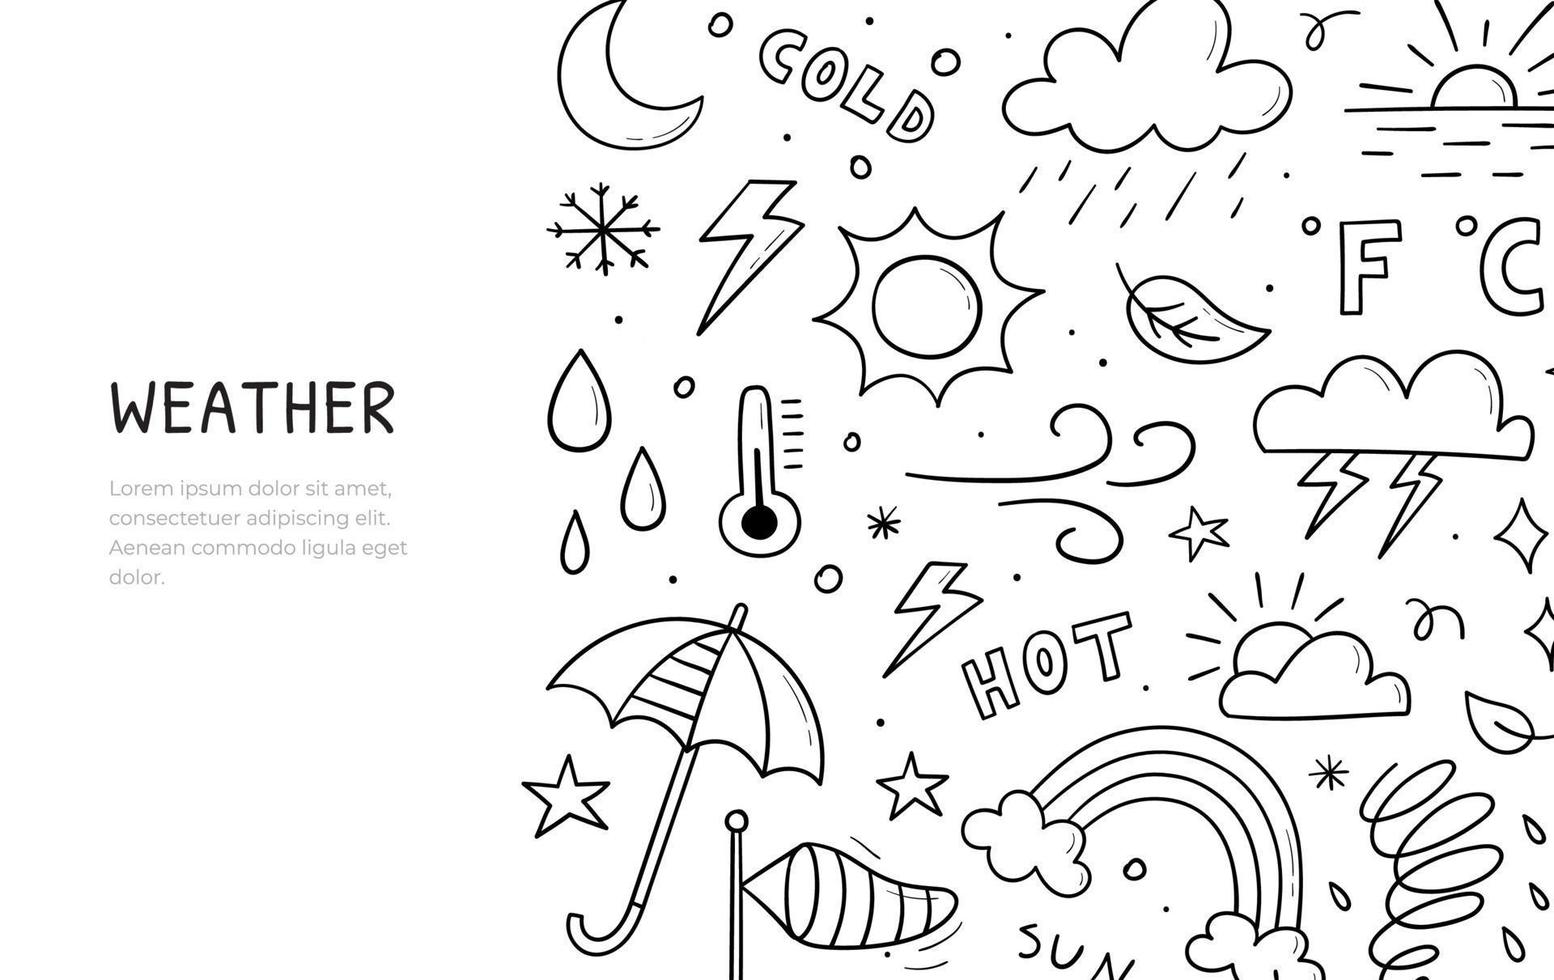 Doodle-Set von Wetterthemen. horizontale Bannervorlage. enthält Vektorzeichen der Sonne, Wolken, Schneeflocken, Wind, Regen, Mond, Blitz und mehr isoliert auf weißem Hintergrund. vektor